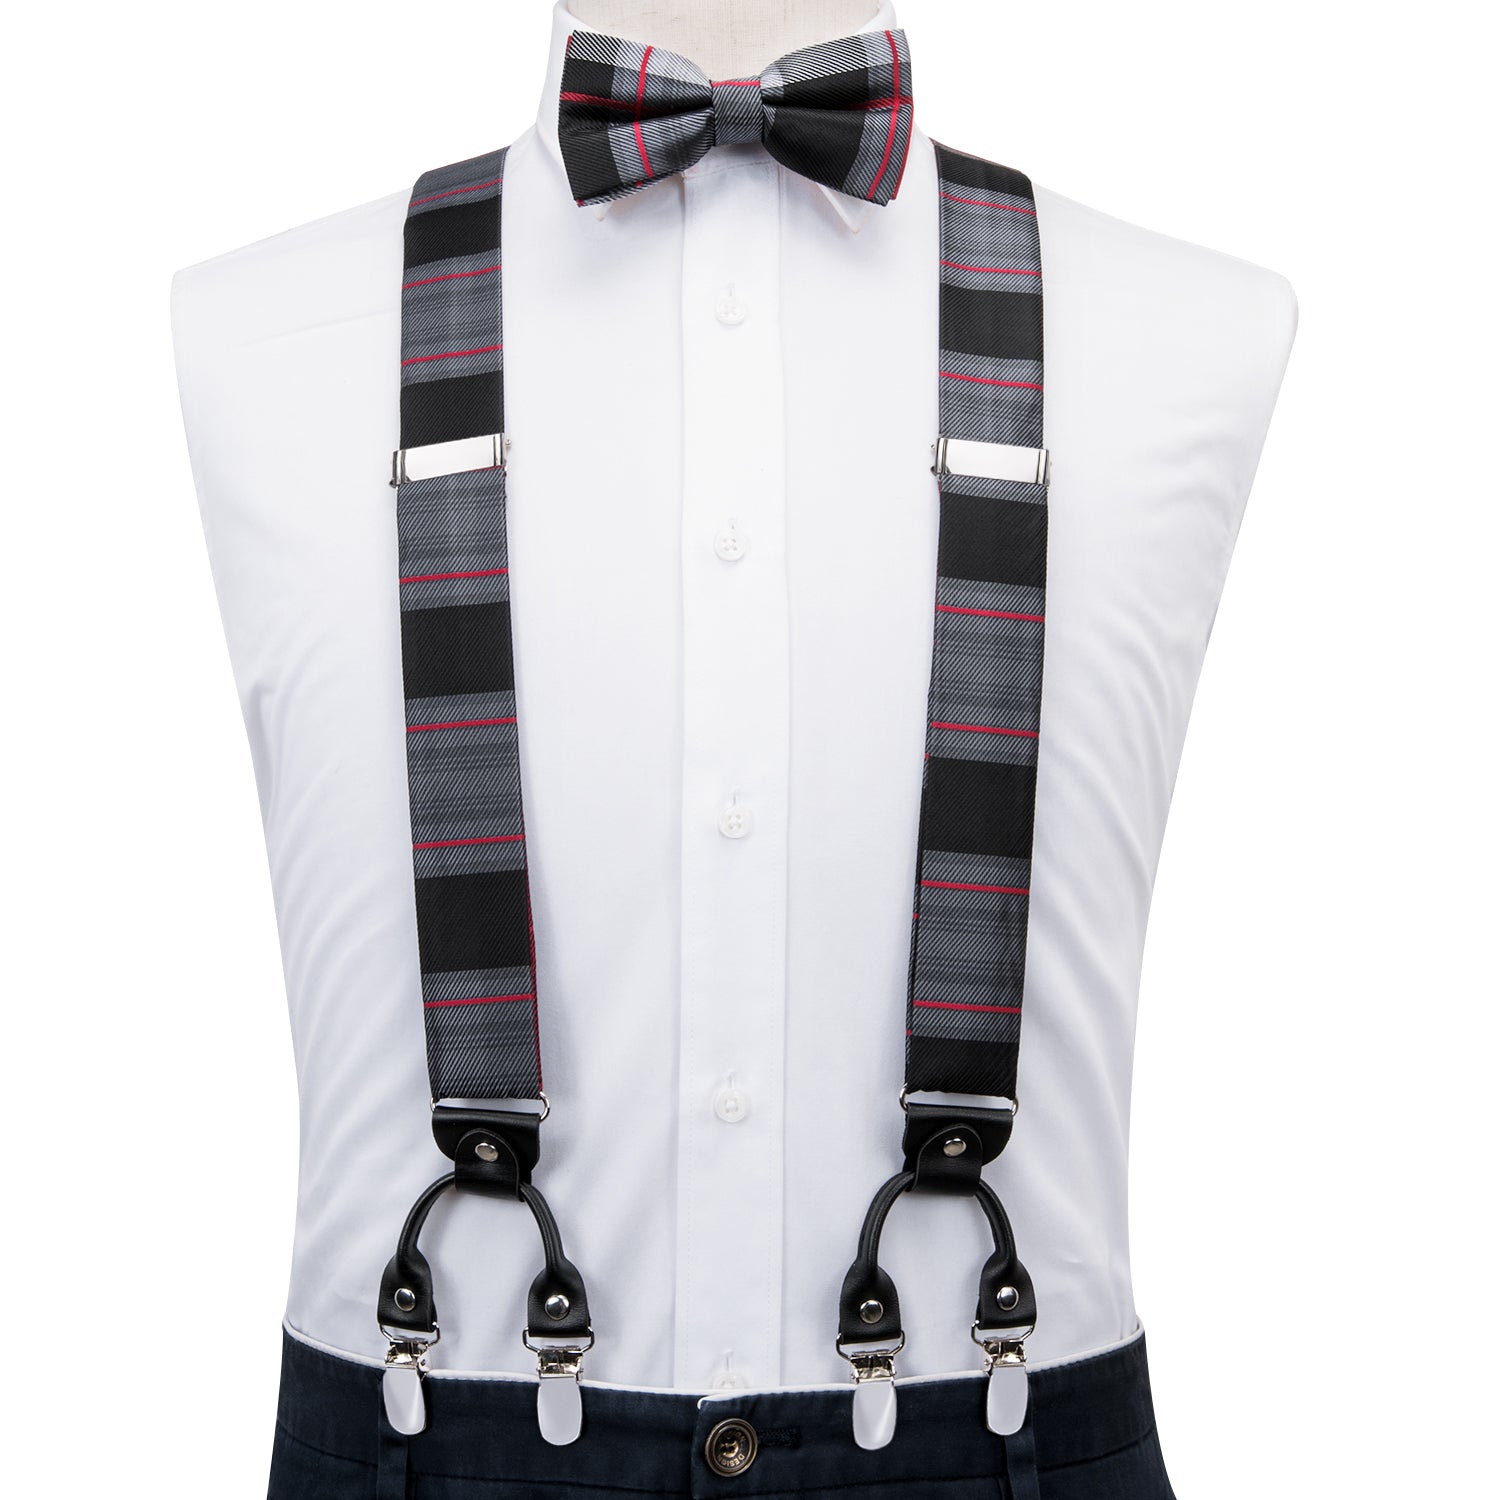 Grey and Black Stripe Suspender Bow Tie Handkerchief Cufflinks Set